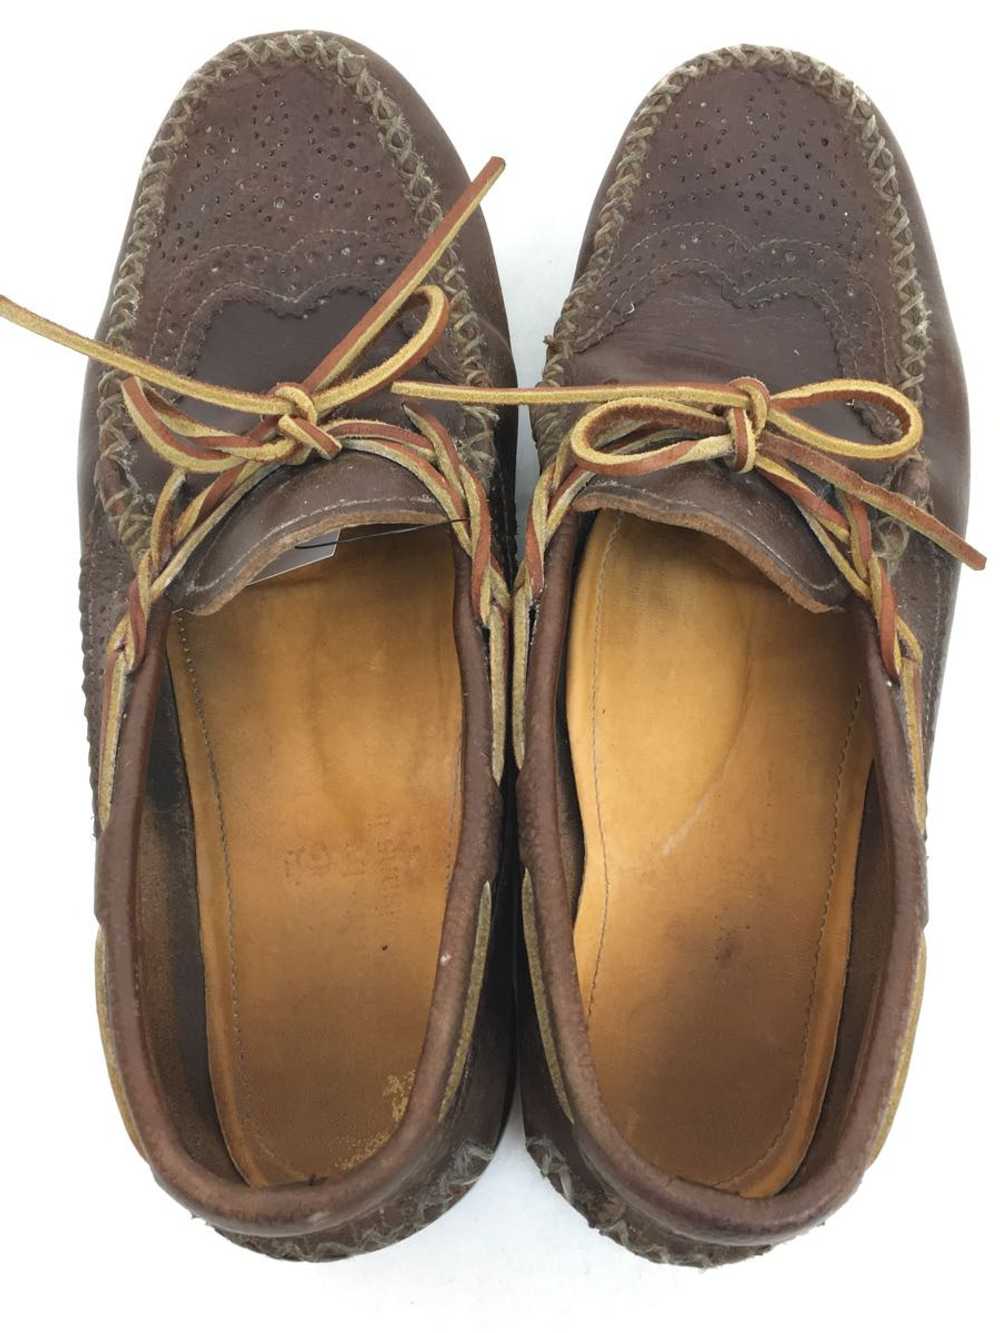 Yuketen Shoes/--/Brw/Leather Shoes - image 3